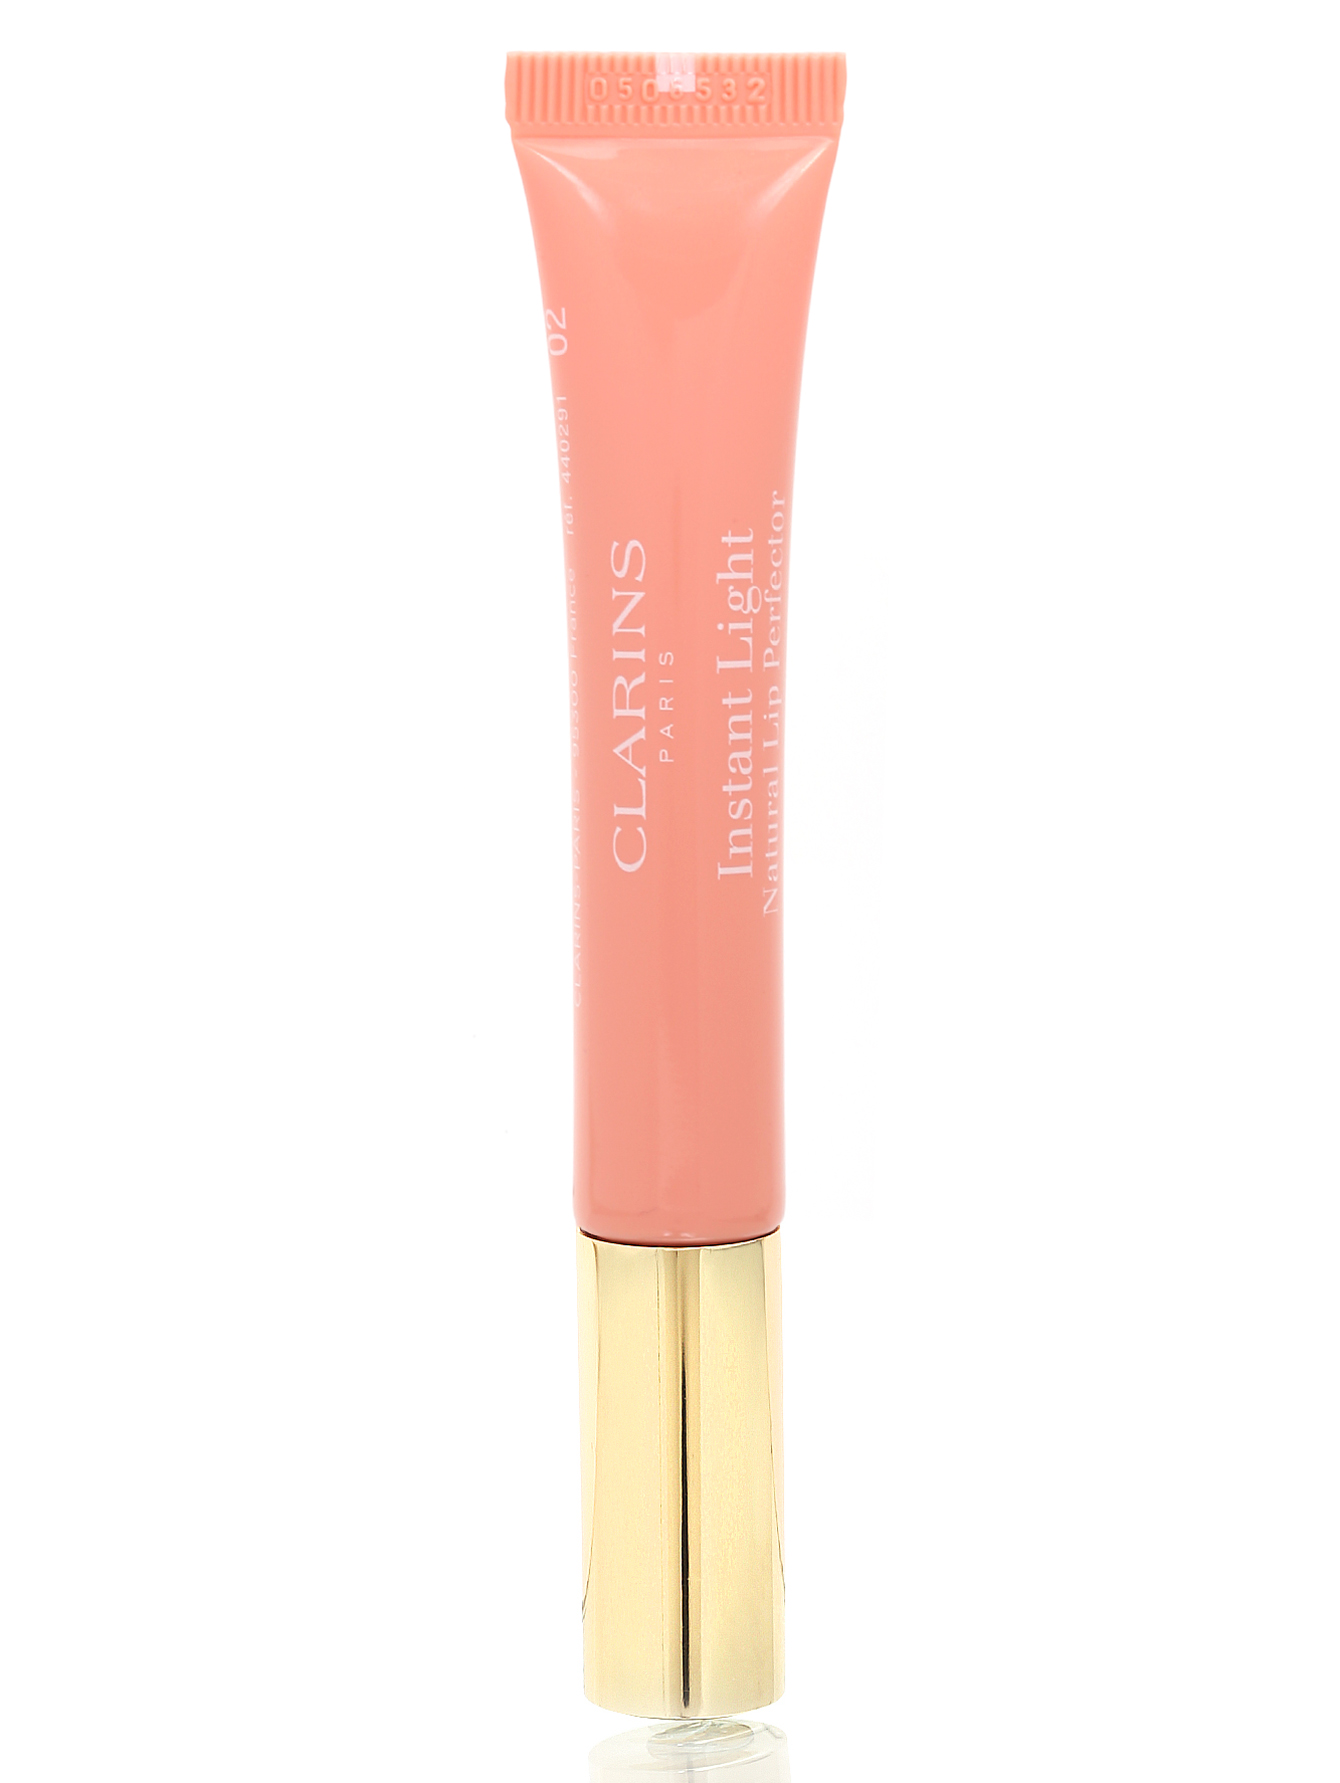  Блеск для губ - №02 Apricot Shimmer, Lip Liner - Общий вид